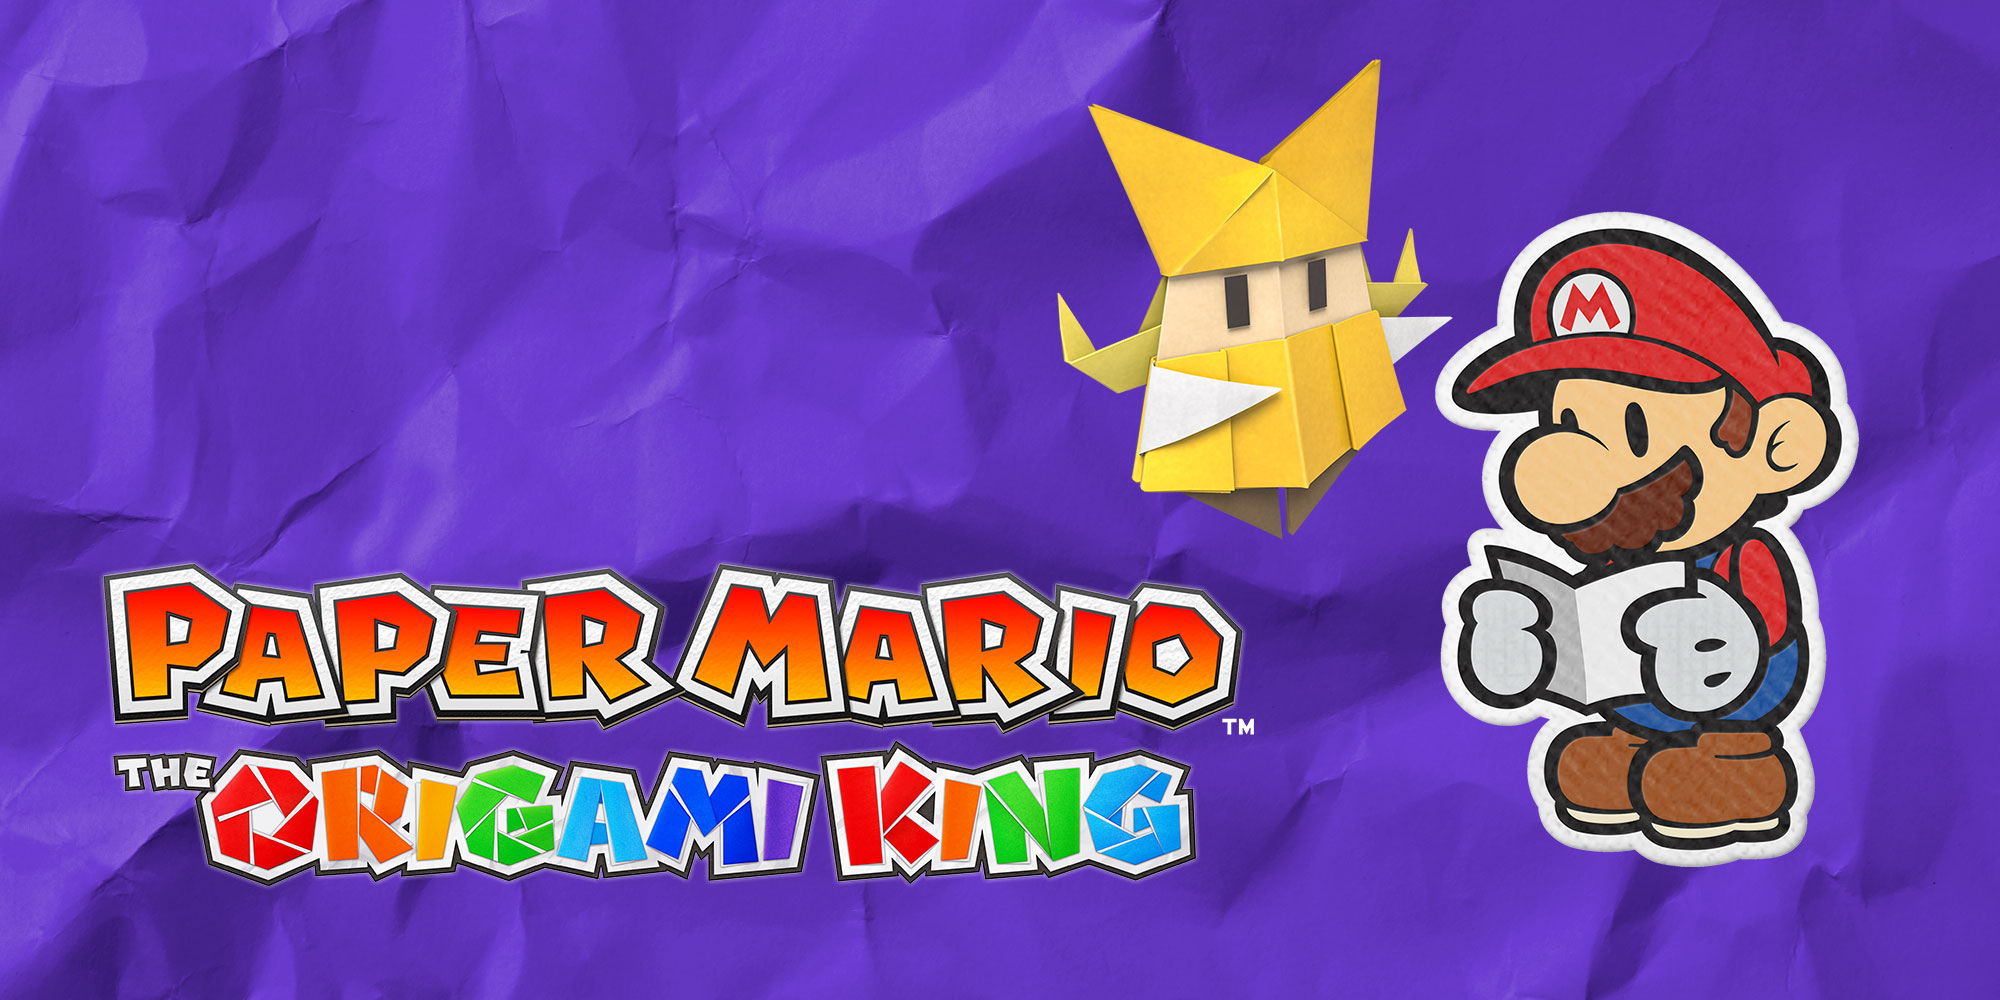 Goditi al massimo la tua avventura con questi 10 consigli per Paper Mario: The Origami King!